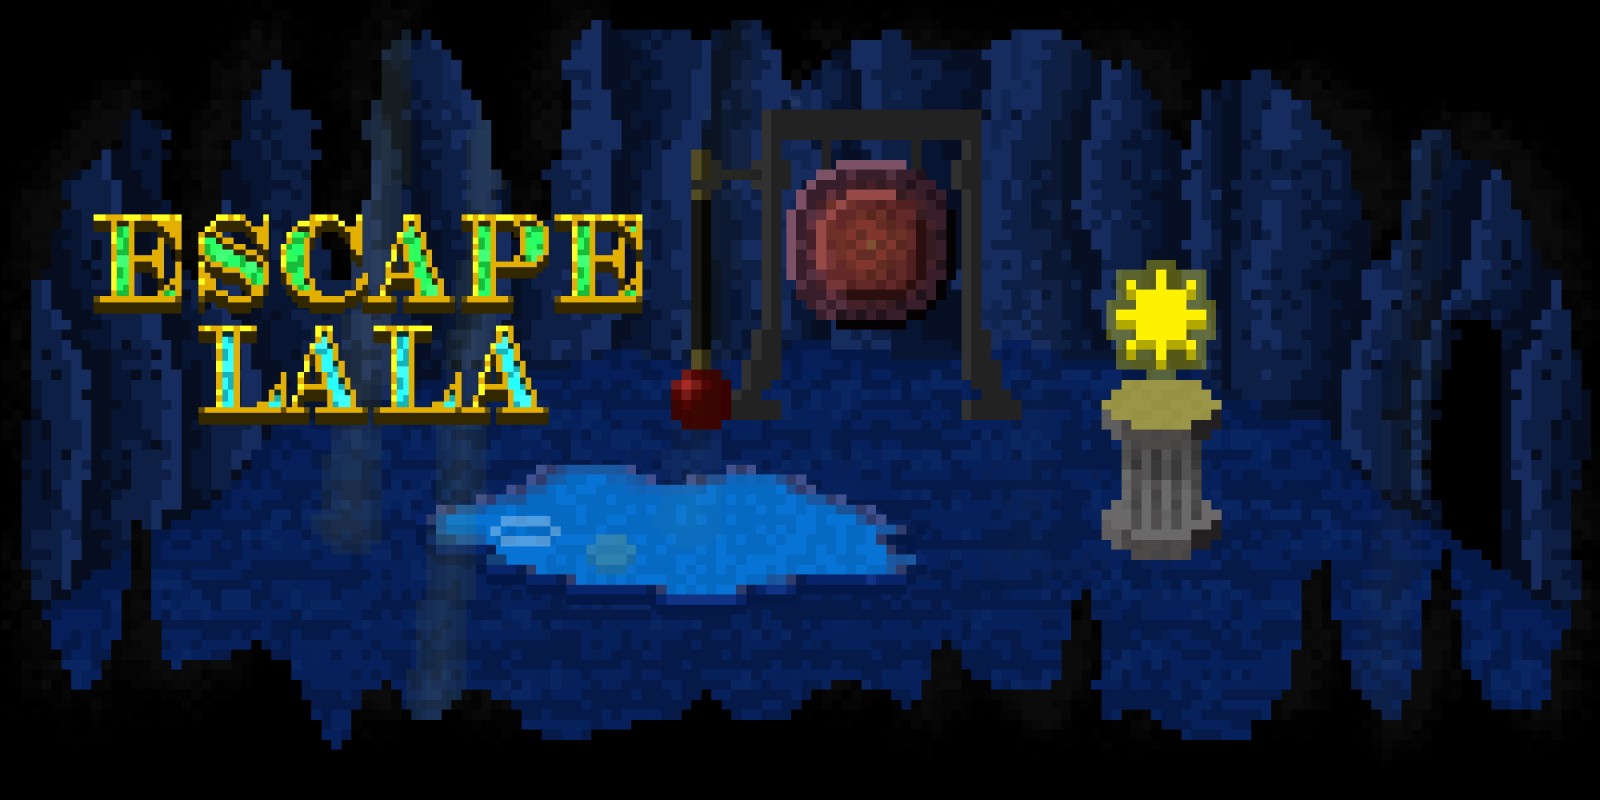 Escape Lala - Retro Point and Click Adventure